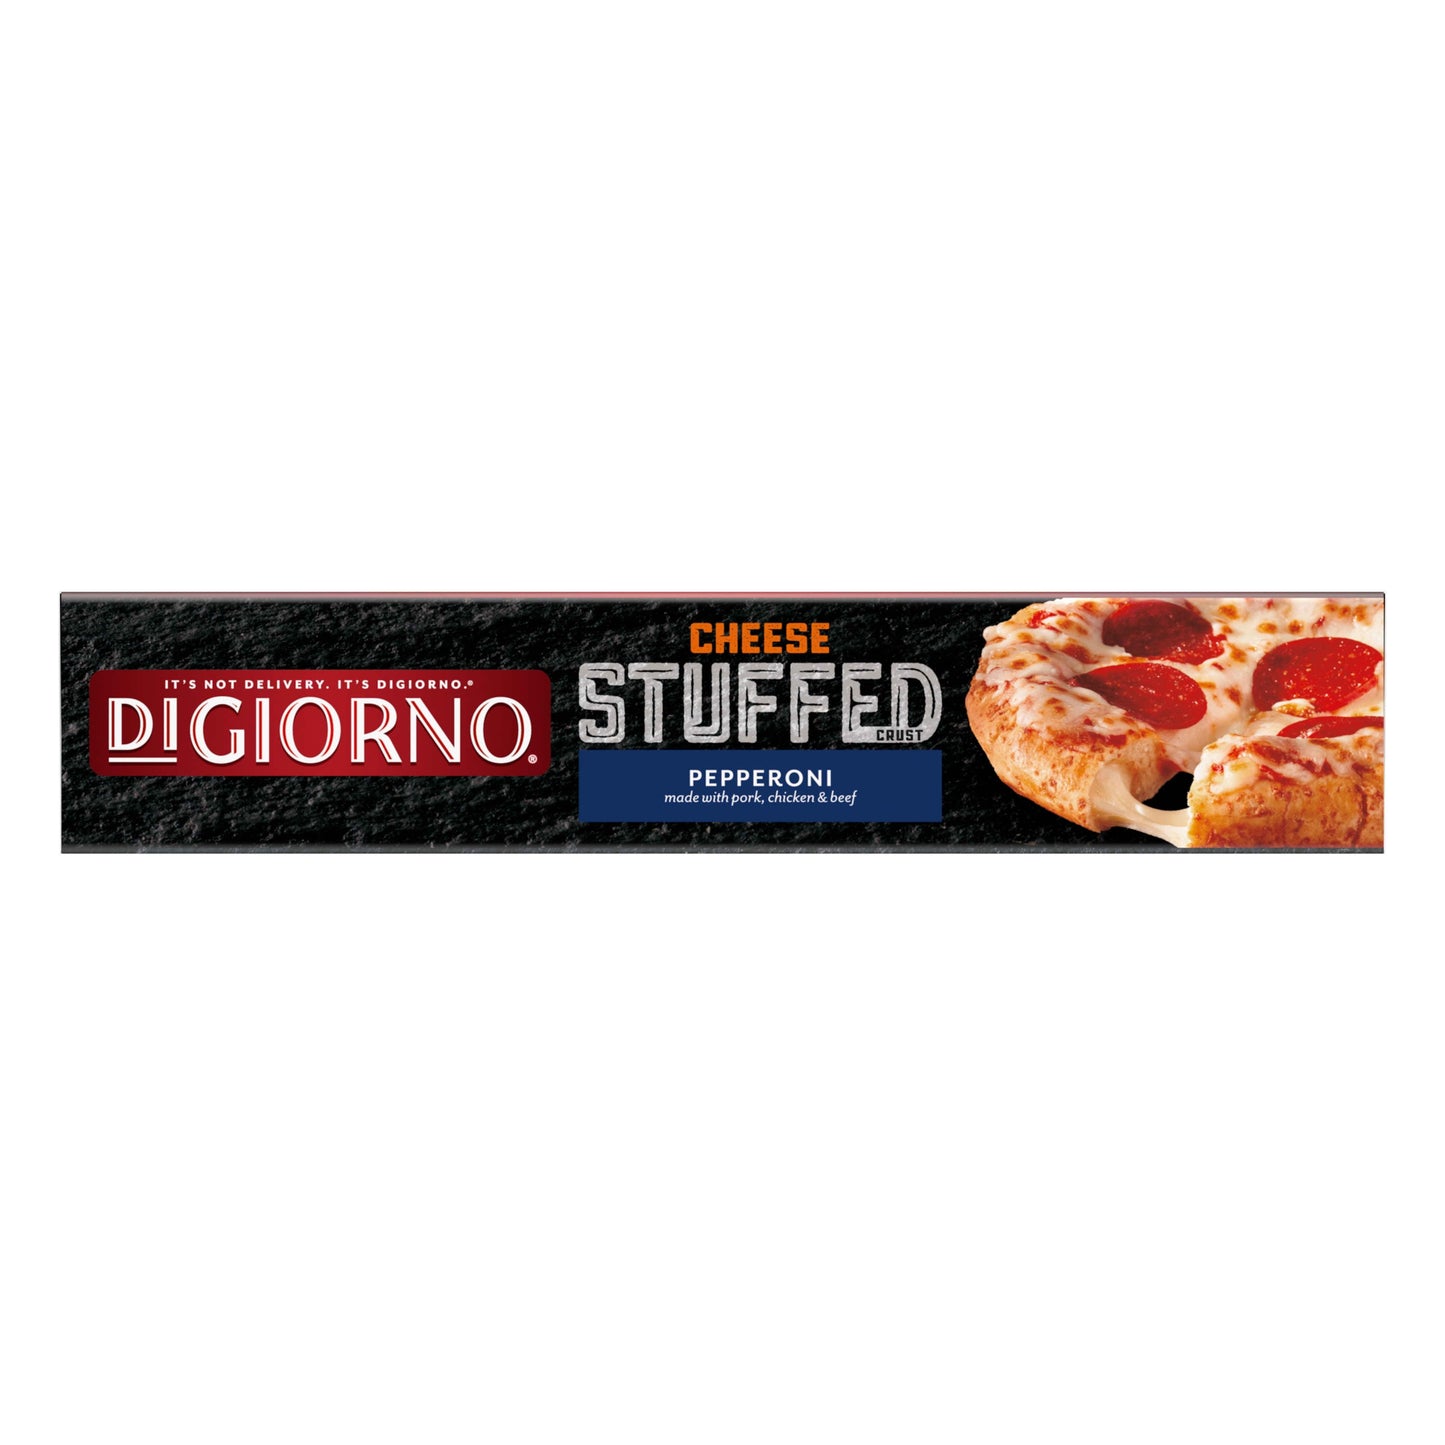 DiGiorno Frozen Pizza, Pepperoni Stuffed Crust Mini Pizza with Marinara Sauce, 8.5 oz (Frozen)